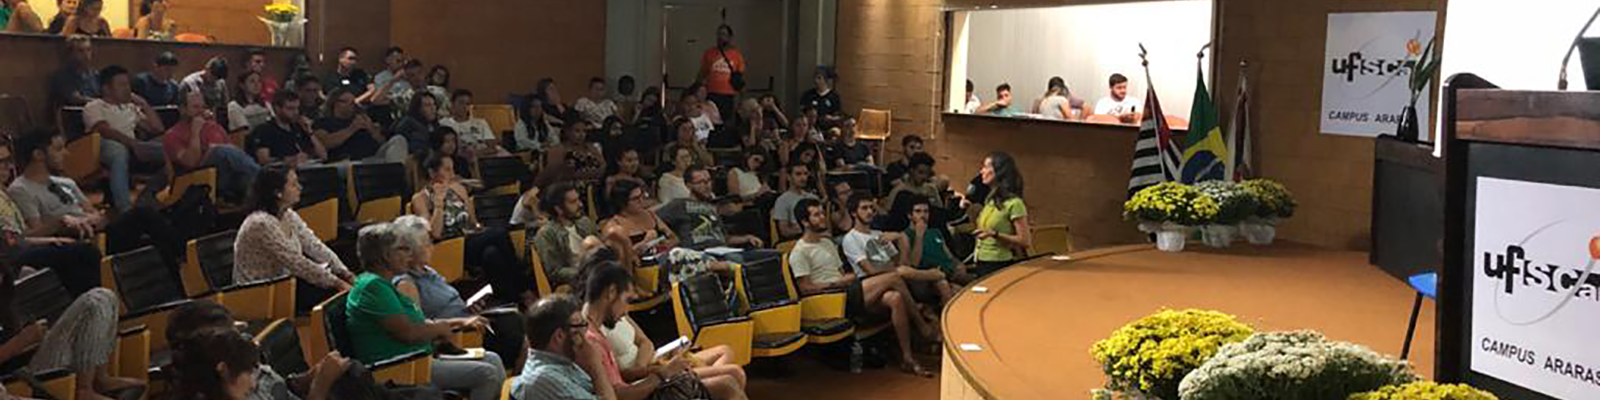 Anfiteatro del CCA-UFSCar con personas sentadas sobre las sillas, lateral en color naranja y asientos de color negro, escenario con púlpito y macetas, al final del escenario banderas de Brasil, estado de São Paulo y municipio de Araras. En el techo focos de luces dirigidos al escenario.